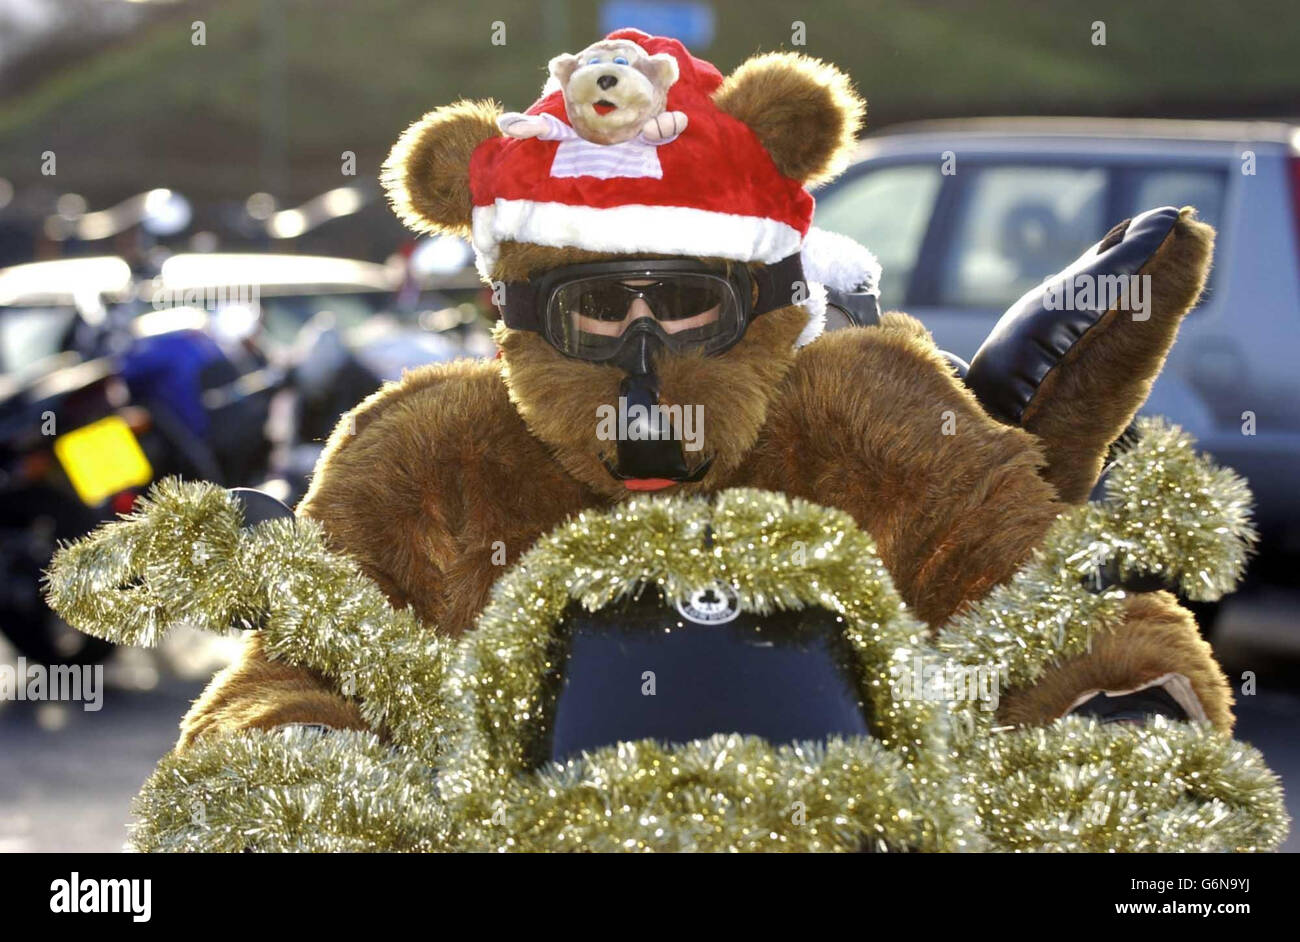 Un motard vêtu d'ours en peluche rejoint plus d'une centaine de motocyclistes à l'Ace Cafe, Brant, dans le nord de Londres, pour livrer des cadeaux de Noël aux enfants de l'hôpital Central Middlesex, de l'hôpital St Mary et de l'hôpital St Thomas. Banque D'Images